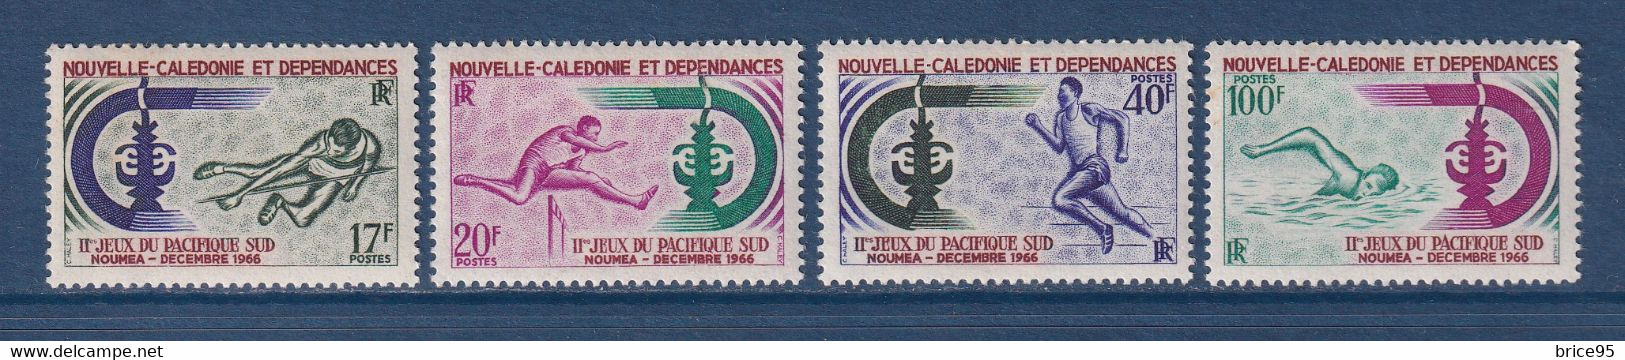 Nouvelle Calédonie - YT N° 332 à 335 * - Neuf Avec Charnière - 1966 - Unused Stamps